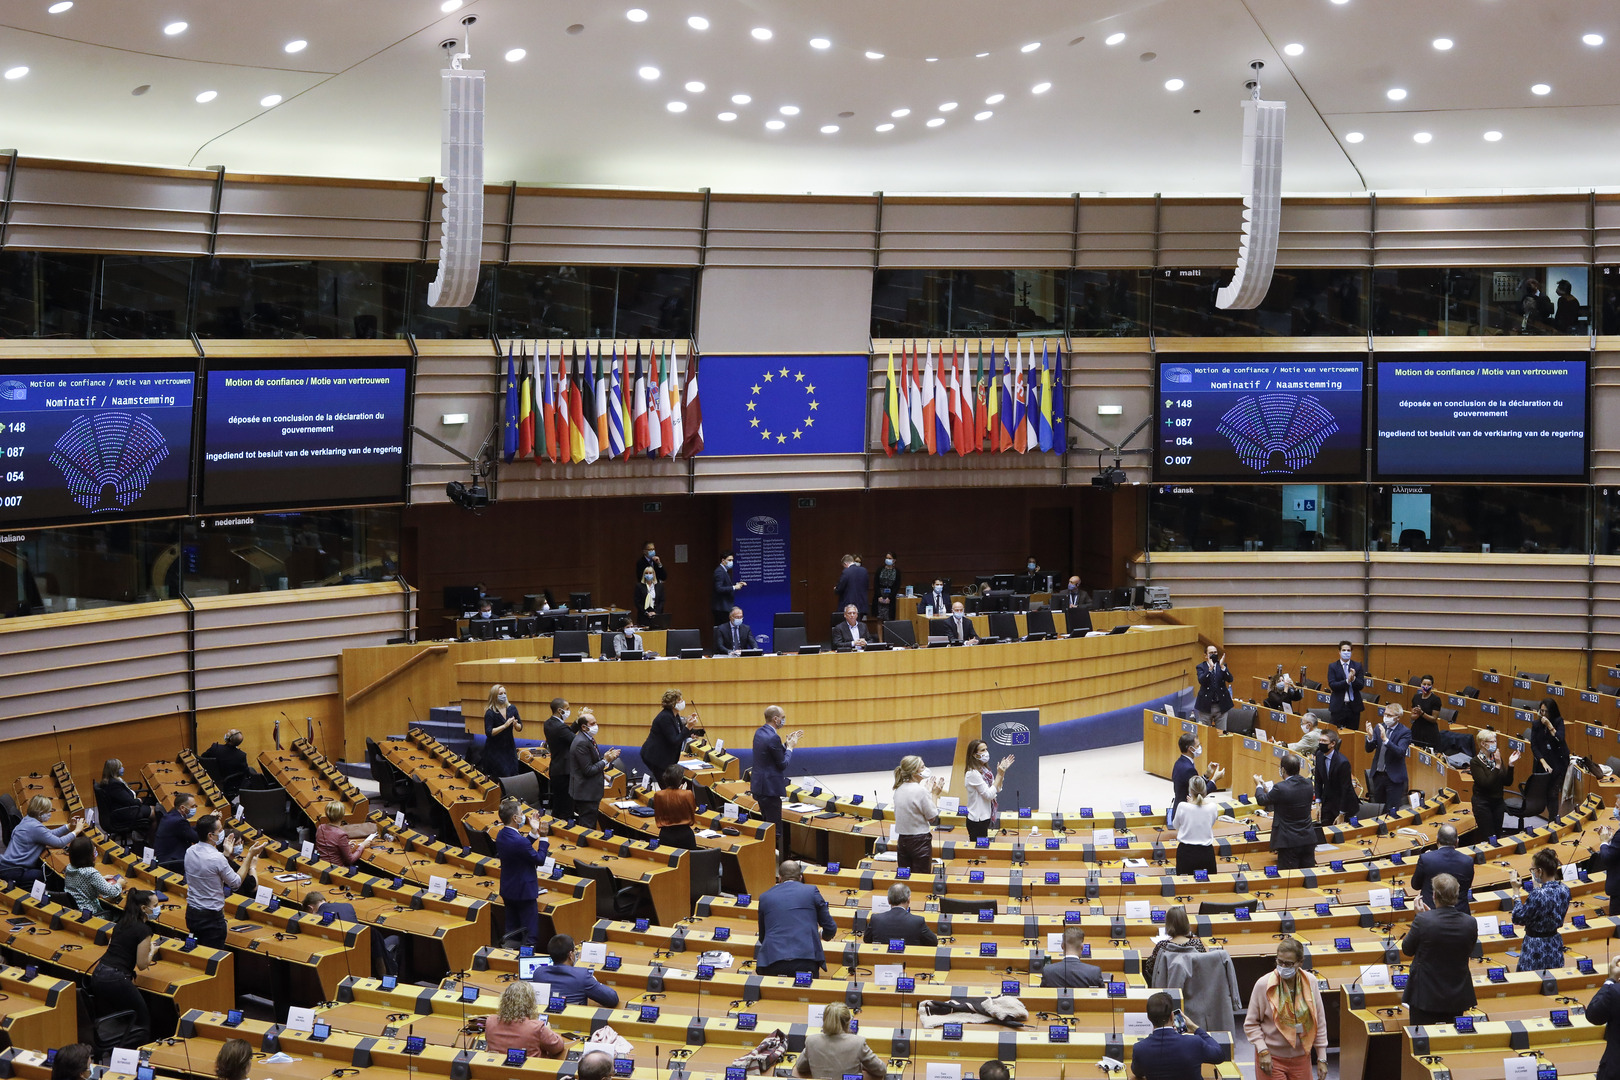 البرلمان الأوروبي يقر التوصيات بإعادة النظر في العلاقات مع بيلاروس